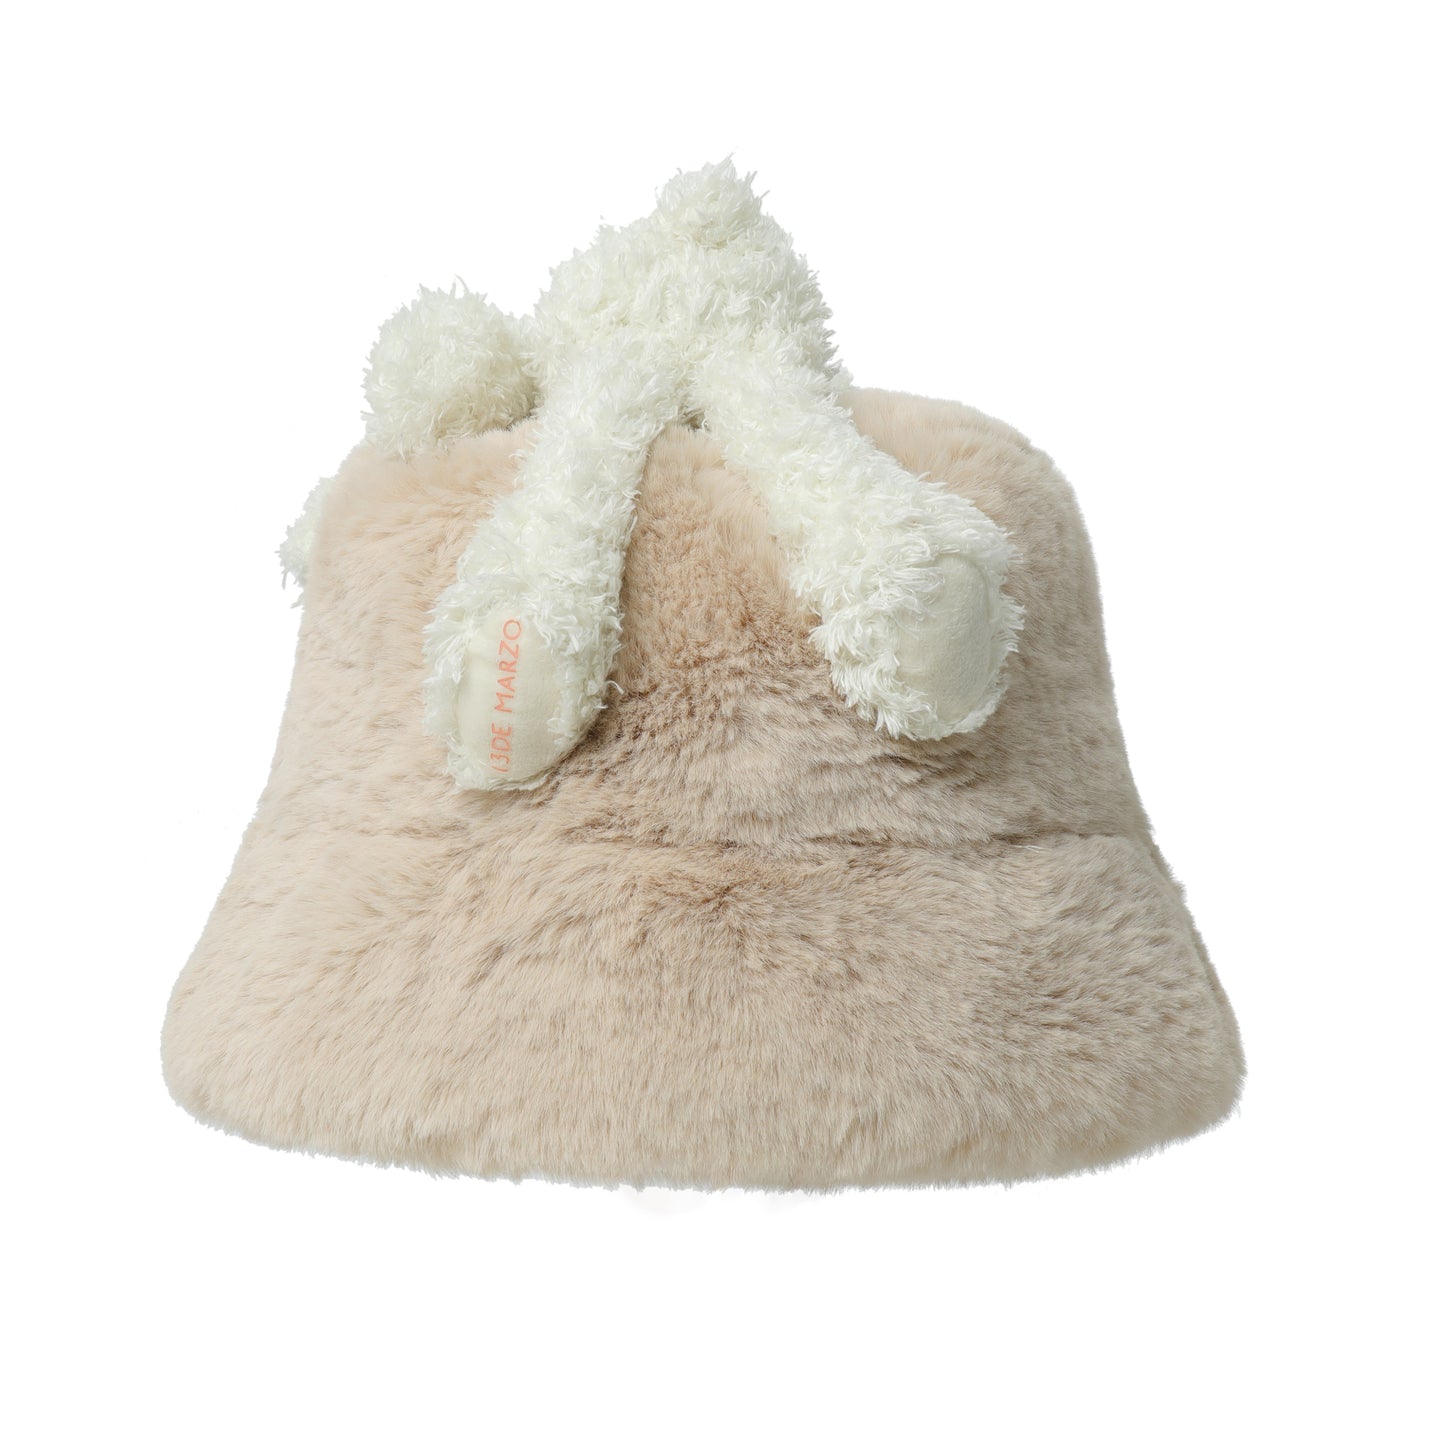 13DE MARZO Furry Bear Bucket Hat